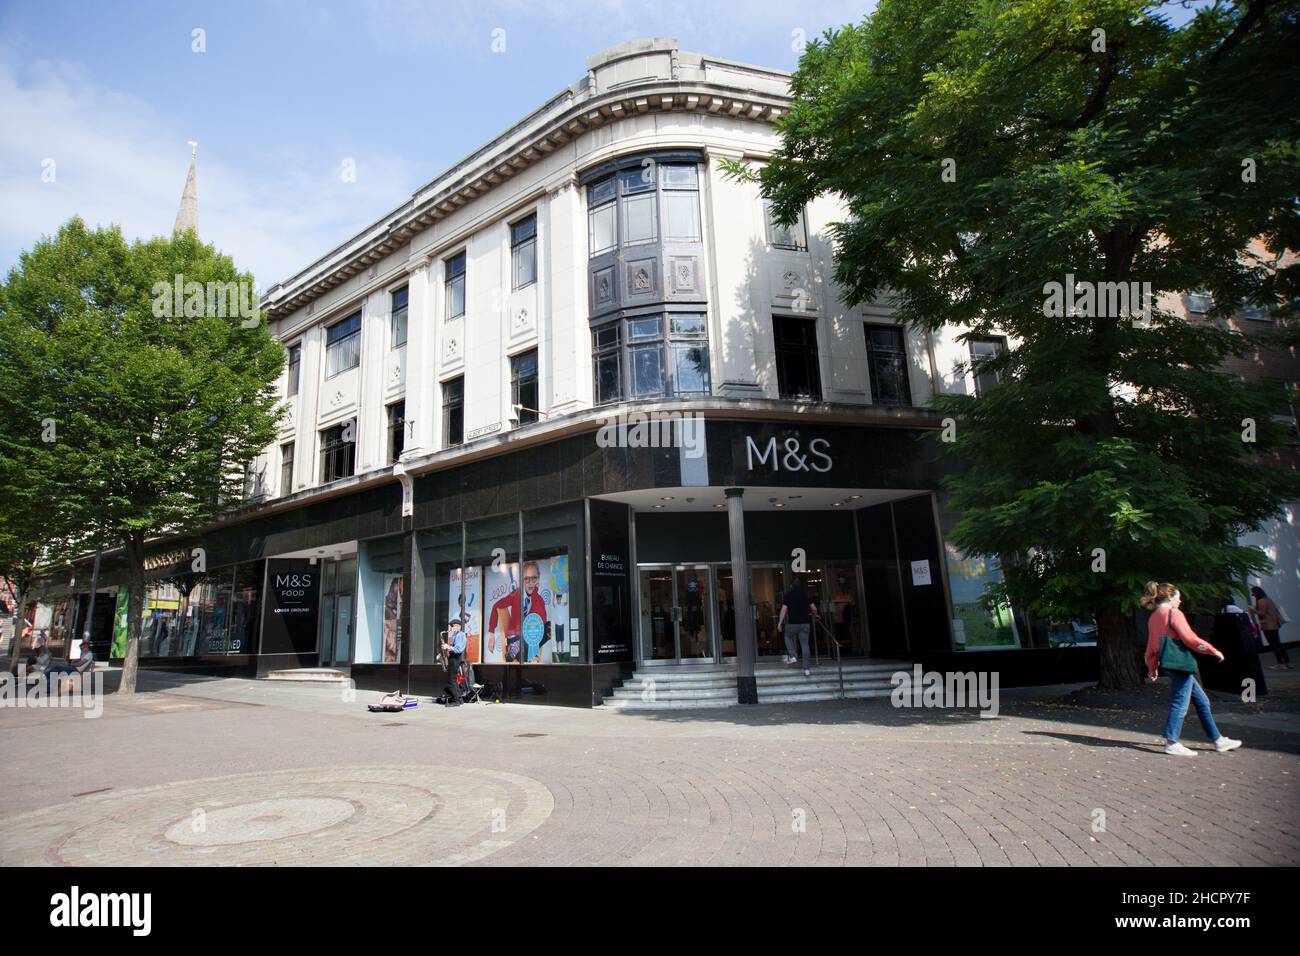 M & S on Albert Street in Nottingham in the UK Stock Photo